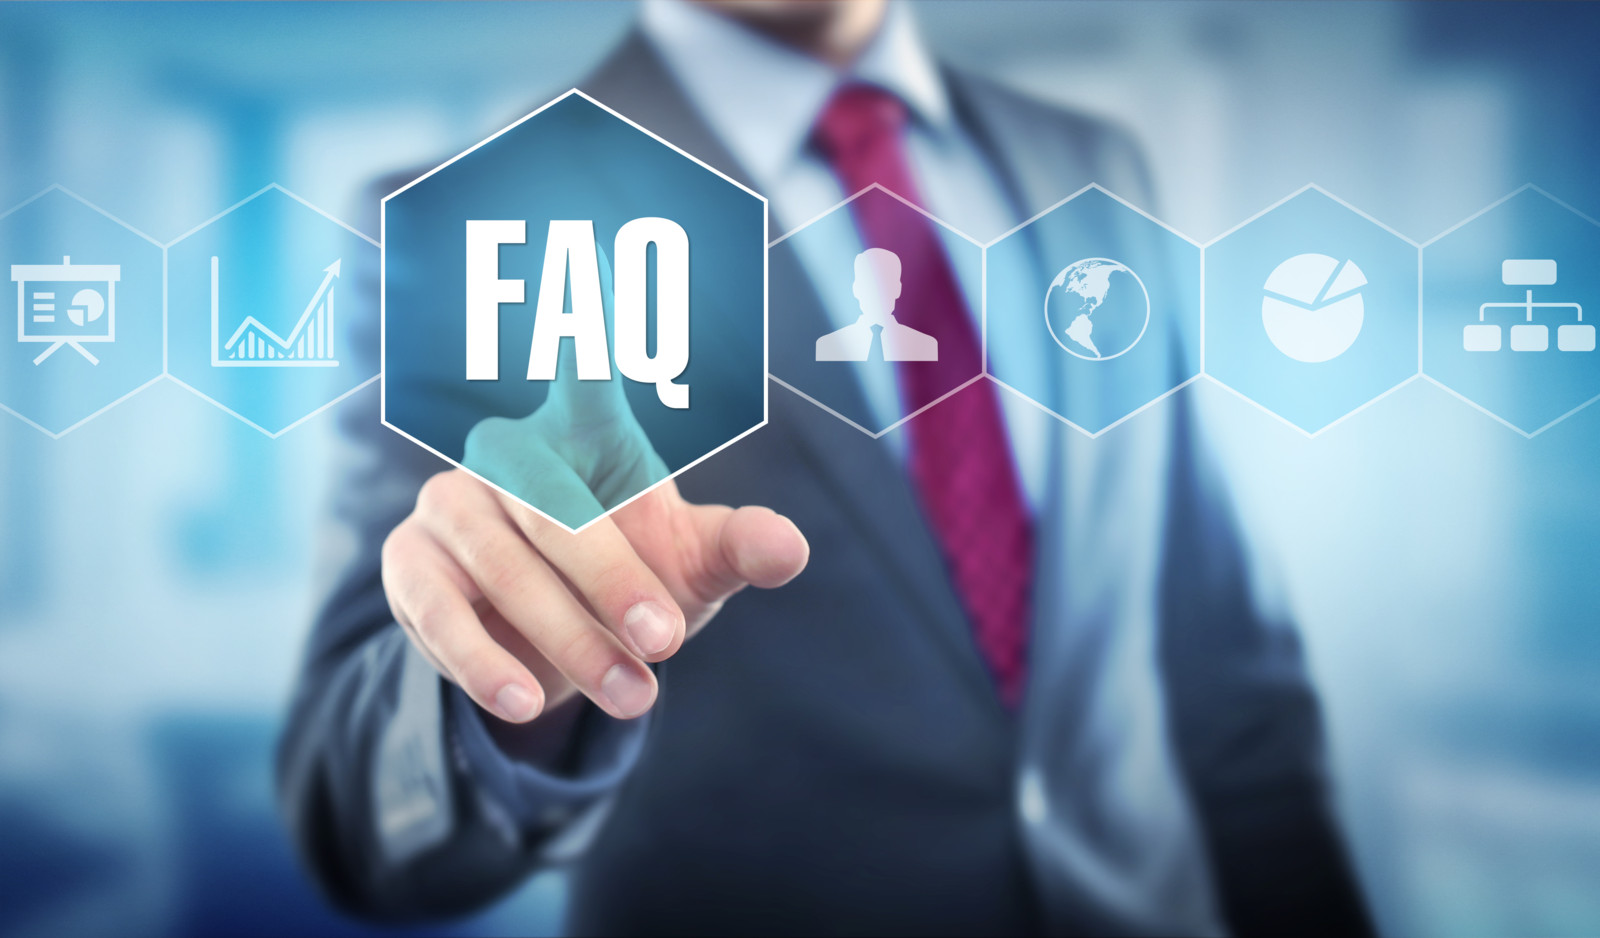 Alles was Sie zu digitalen Fahrtenbüchern wissen müssen, beantworten wir in unserer FAQ-Liste.